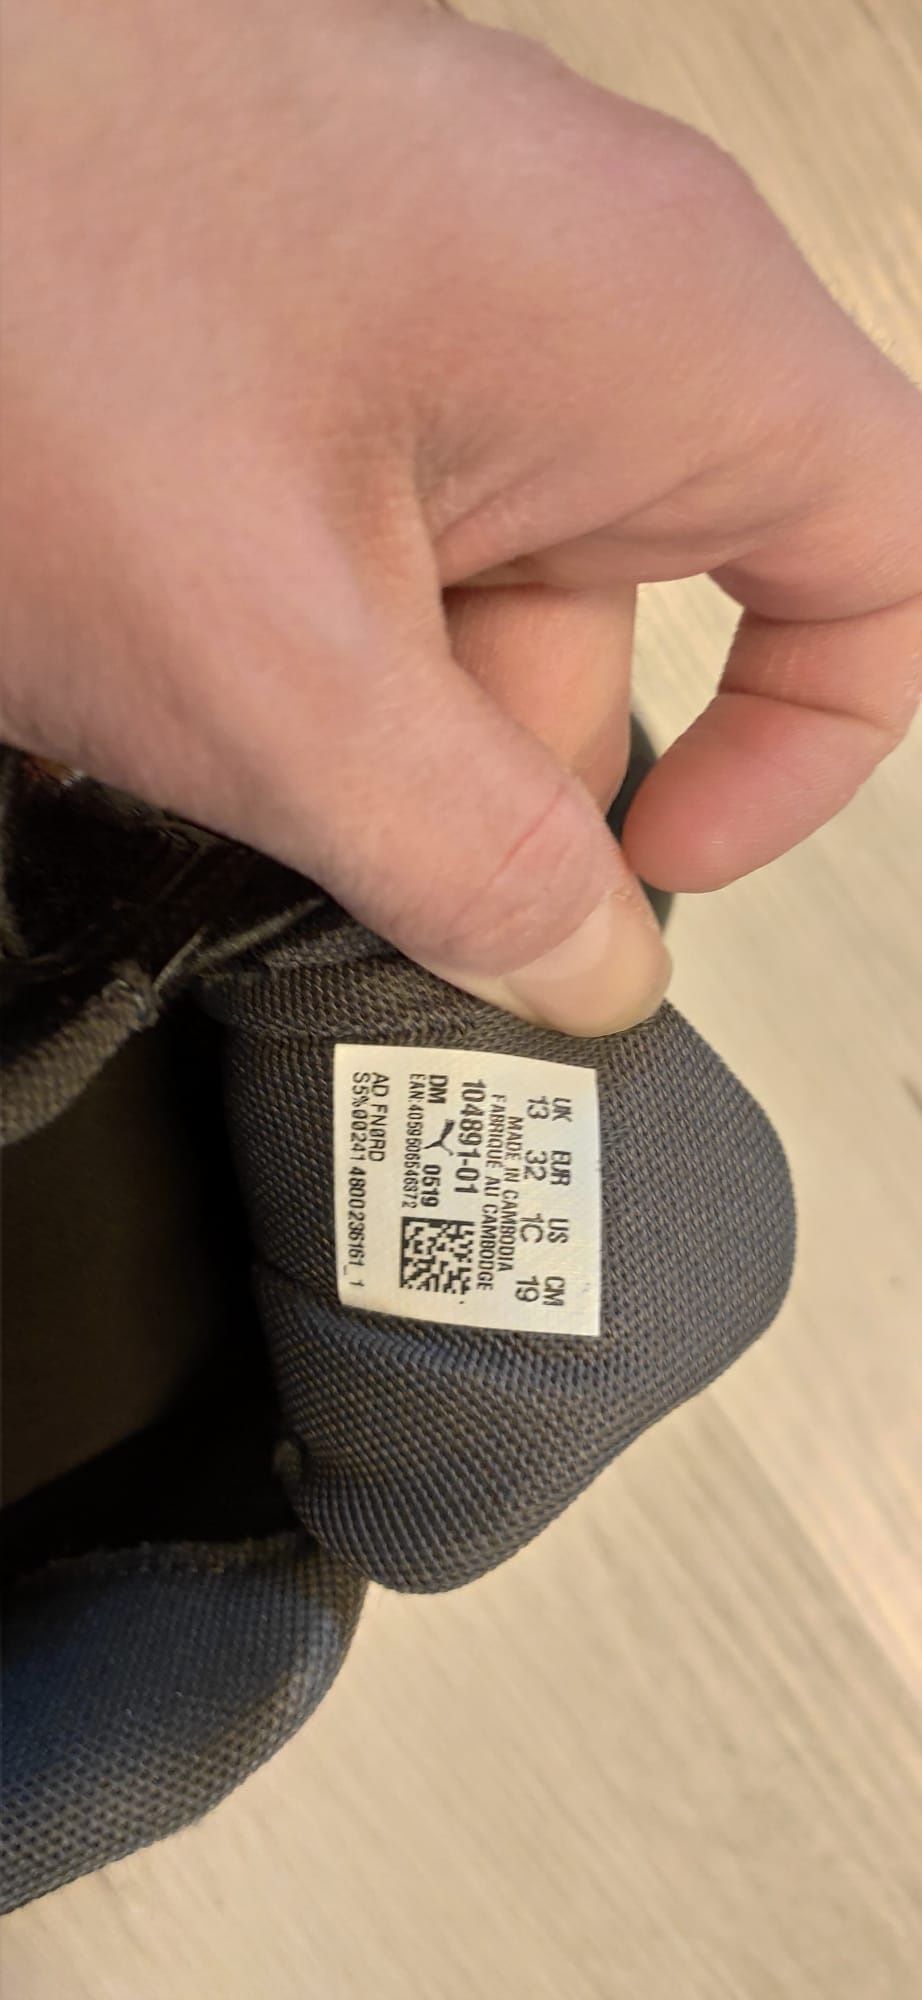 Buty dziecięce chłopiece typu adidas firmy PUMA rozmiar 32